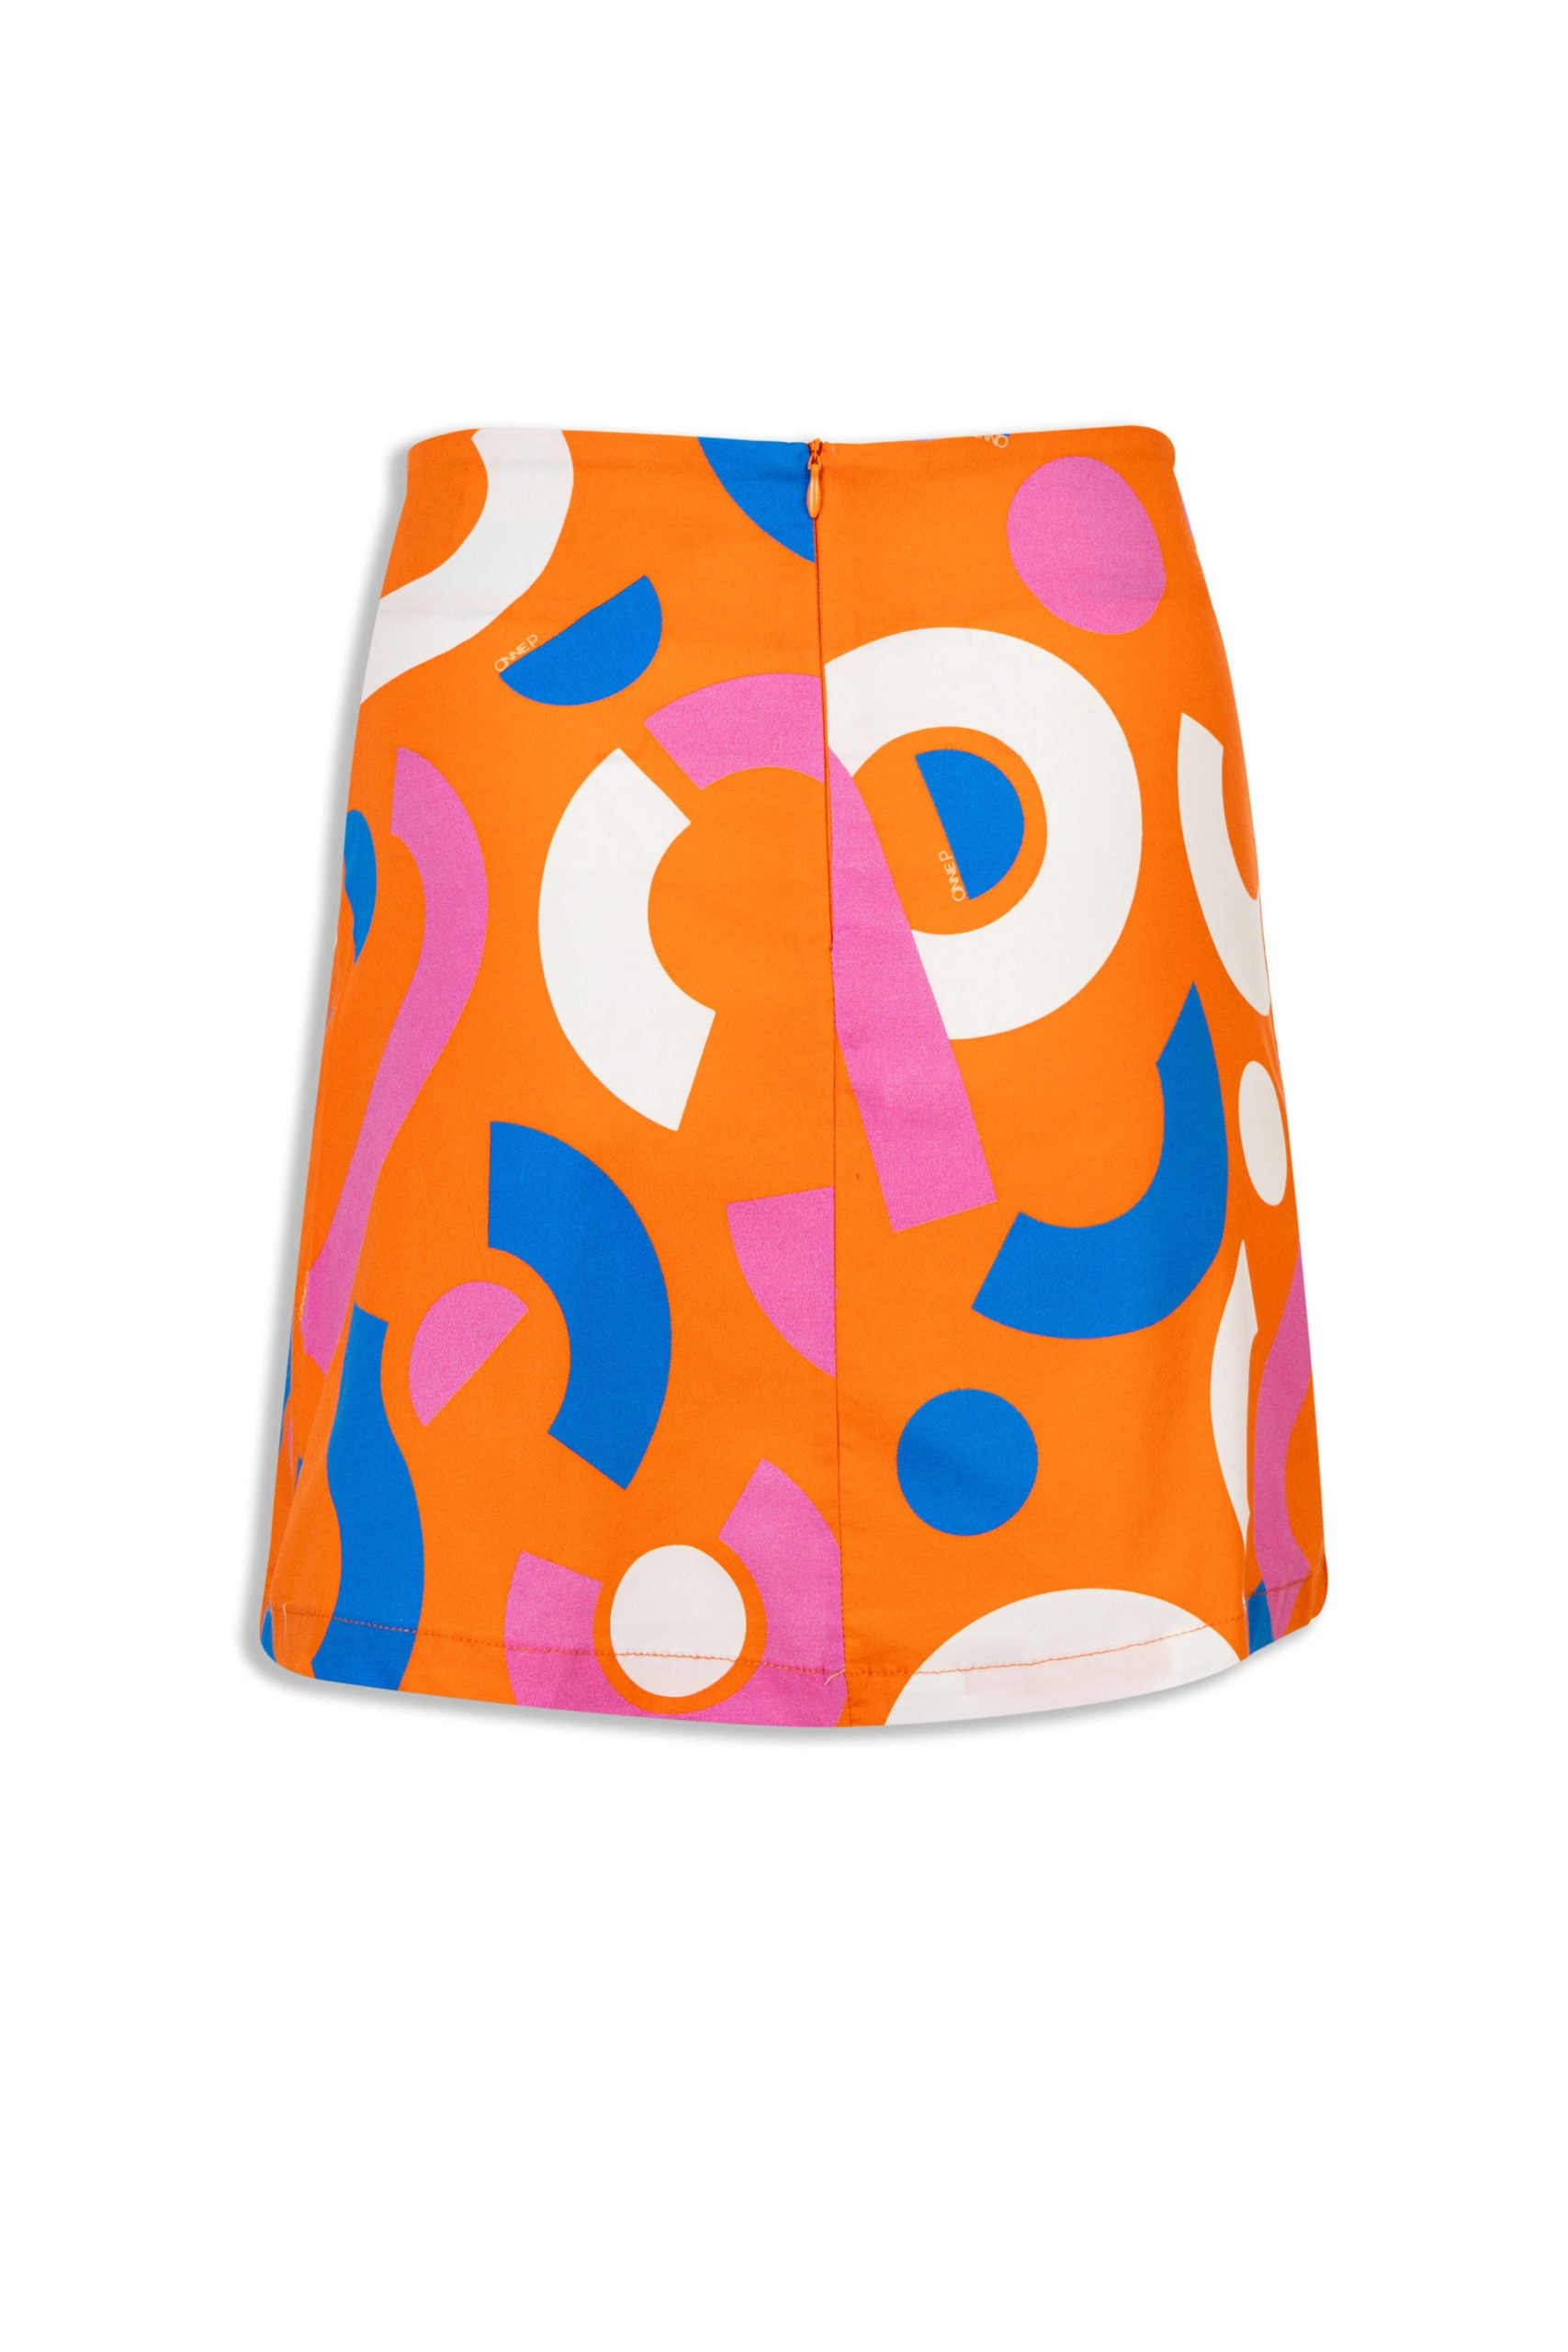 Twiggy Candybag Orange Skirt